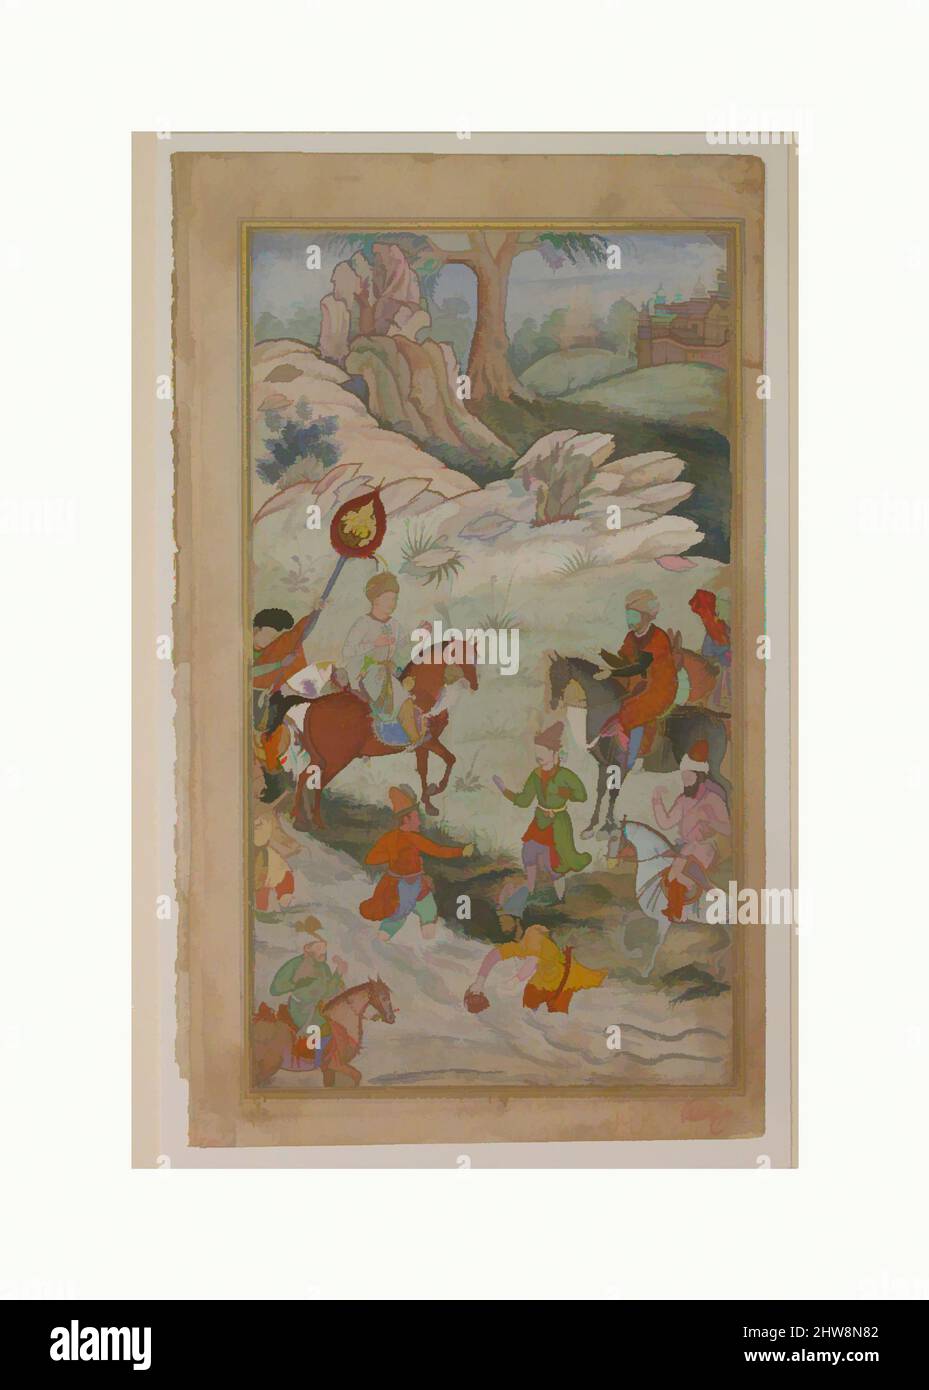 Art inspiré par la rencontre entre Babur et Sultan 'Ali Mirza près de Samarqand', Folio d'un Baburnama (le Livre de Babur), ca. 1590, fabriqué dans le Pakistan d'aujourd'hui, probablement Lahore, encre, aquarelle opaque, et or sur papier, page: 10 1/2 x 6 1/4 po. (26,6 x 15,9 cm), CODICES, les mémoires, œuvres classiques modernisées par Artotop avec un peu de modernité. Formes, couleur et valeur, impact visuel accrocheur sur l'art émotions par la liberté d'œuvres d'art d'une manière contemporaine. Un message intemporel qui cherche une nouvelle direction créative. Artistes qui se tournent vers le support numérique et créent le NFT Artotop Banque D'Images